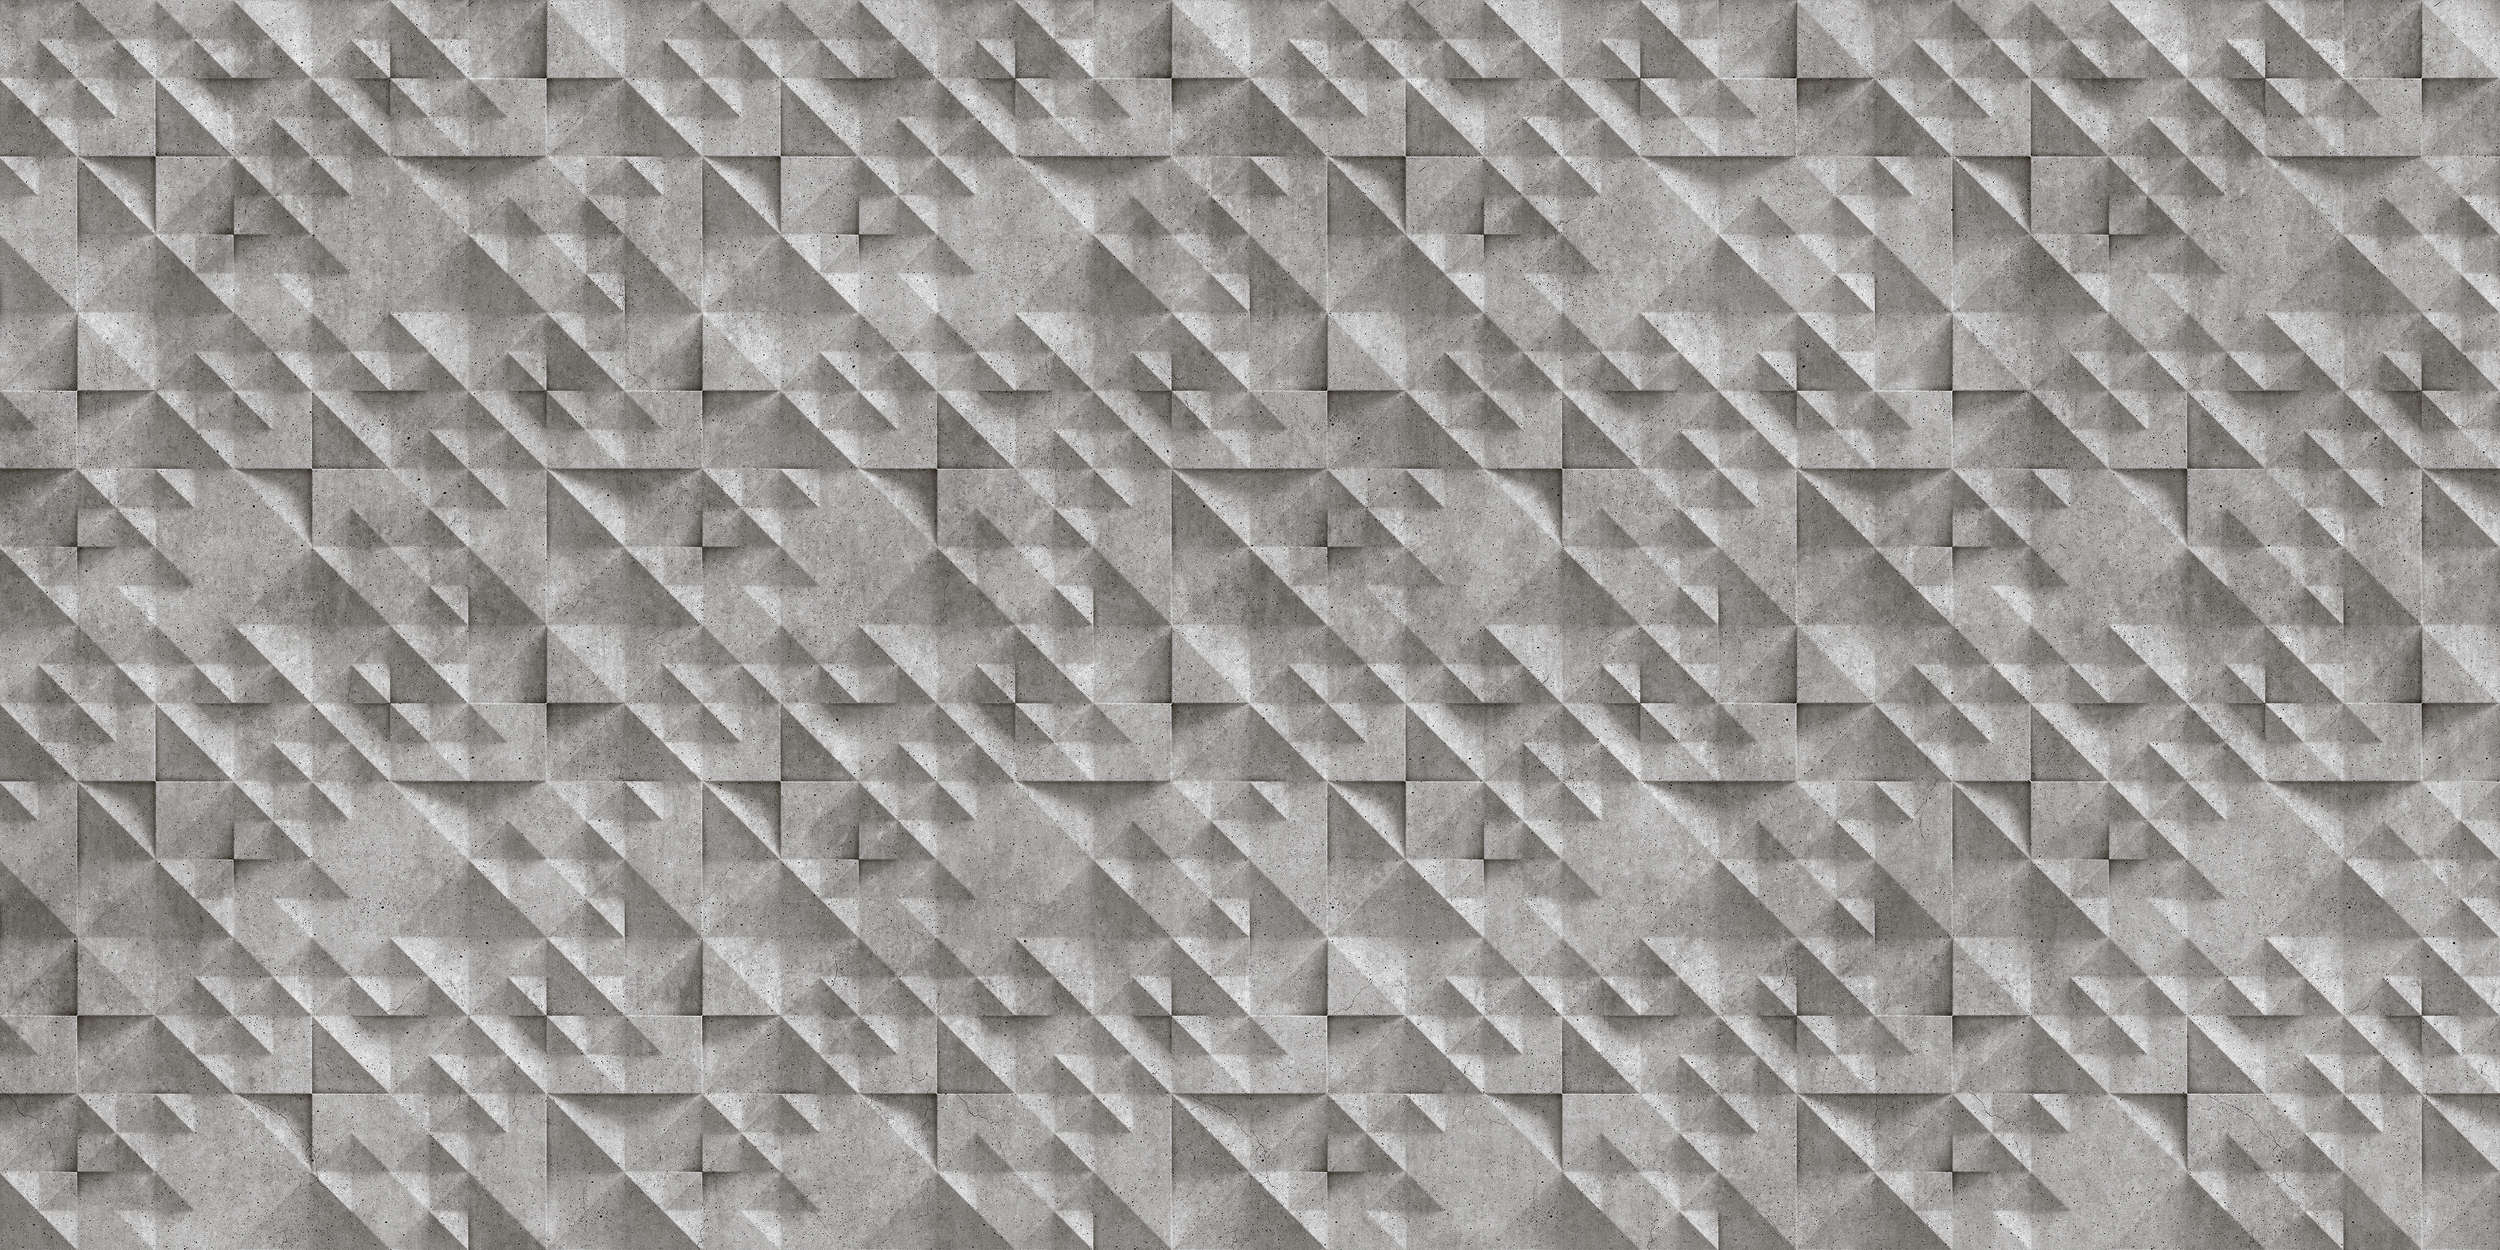             Concrete 2 - Papel pintado Fresco 3D Hormigón - Gris, Negro | Tejido sin tejer texturado
        